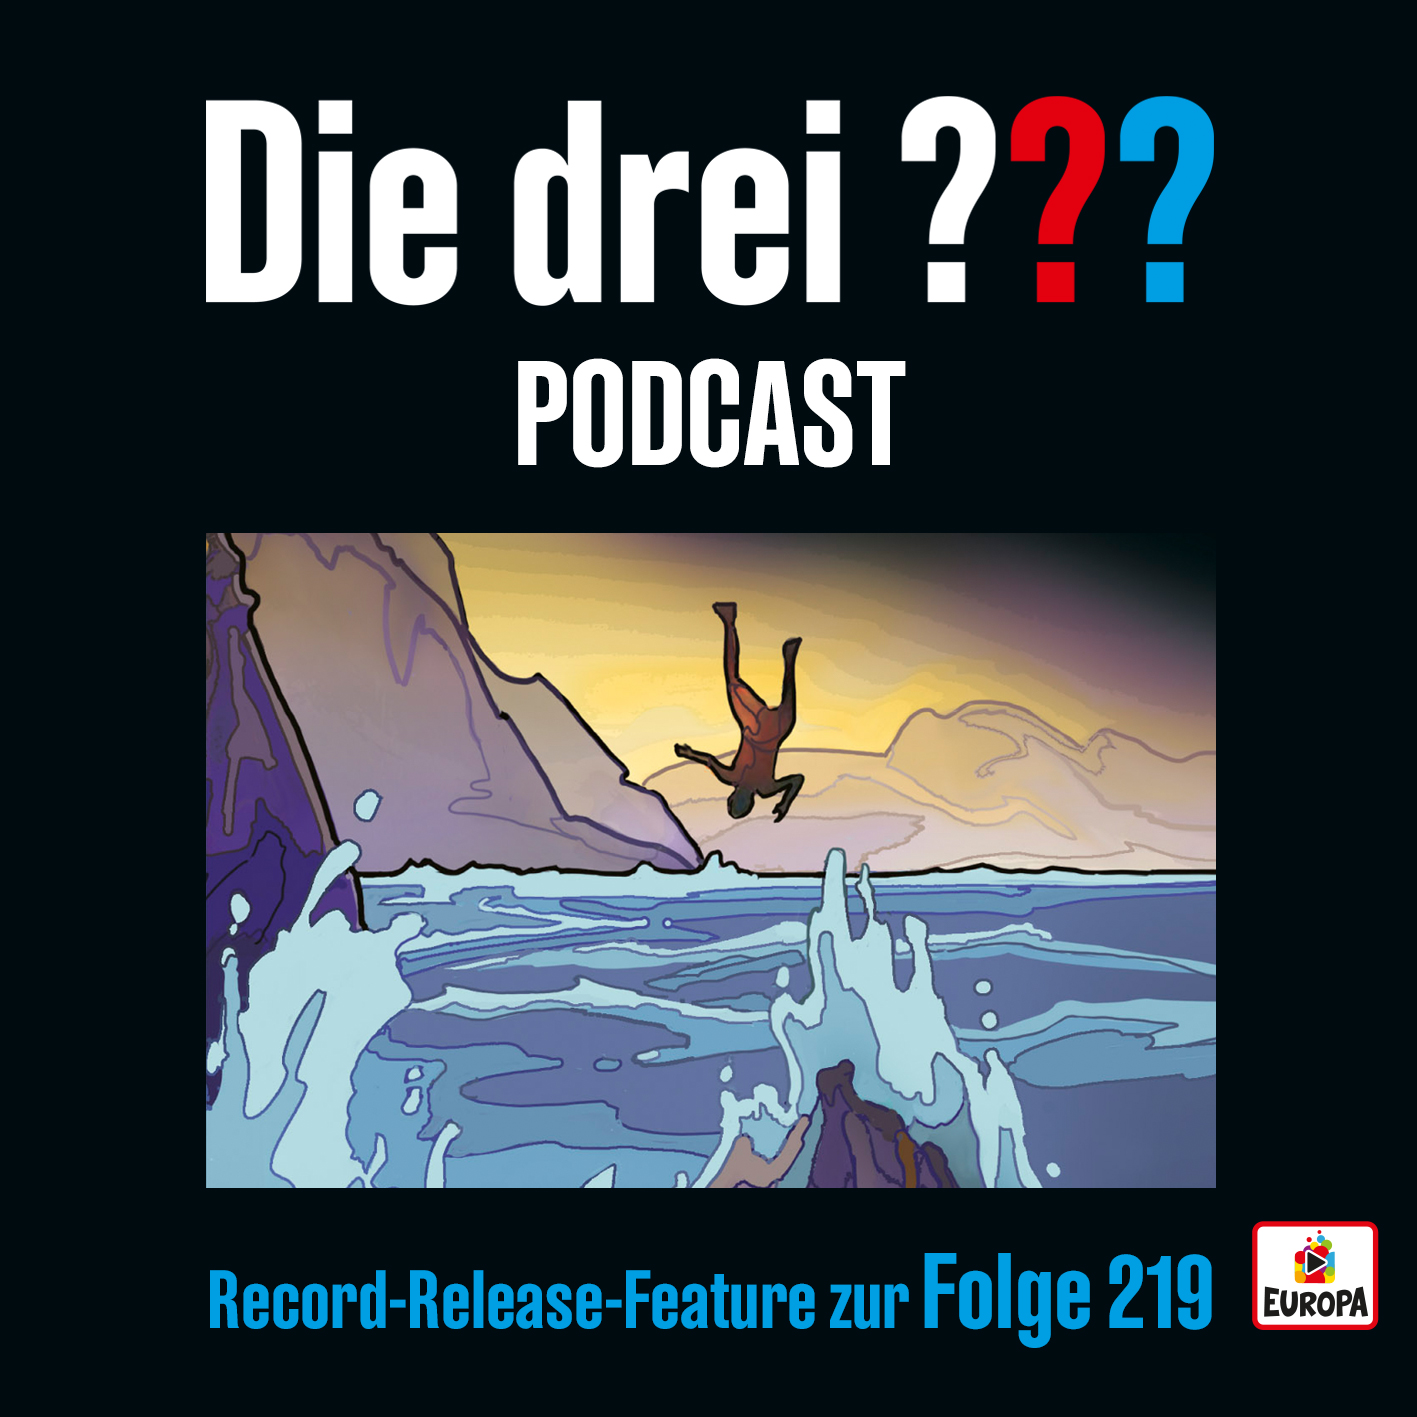 Die drei ??? Record Release Feature zur Folge 219 - Der neue Podcast ist da!